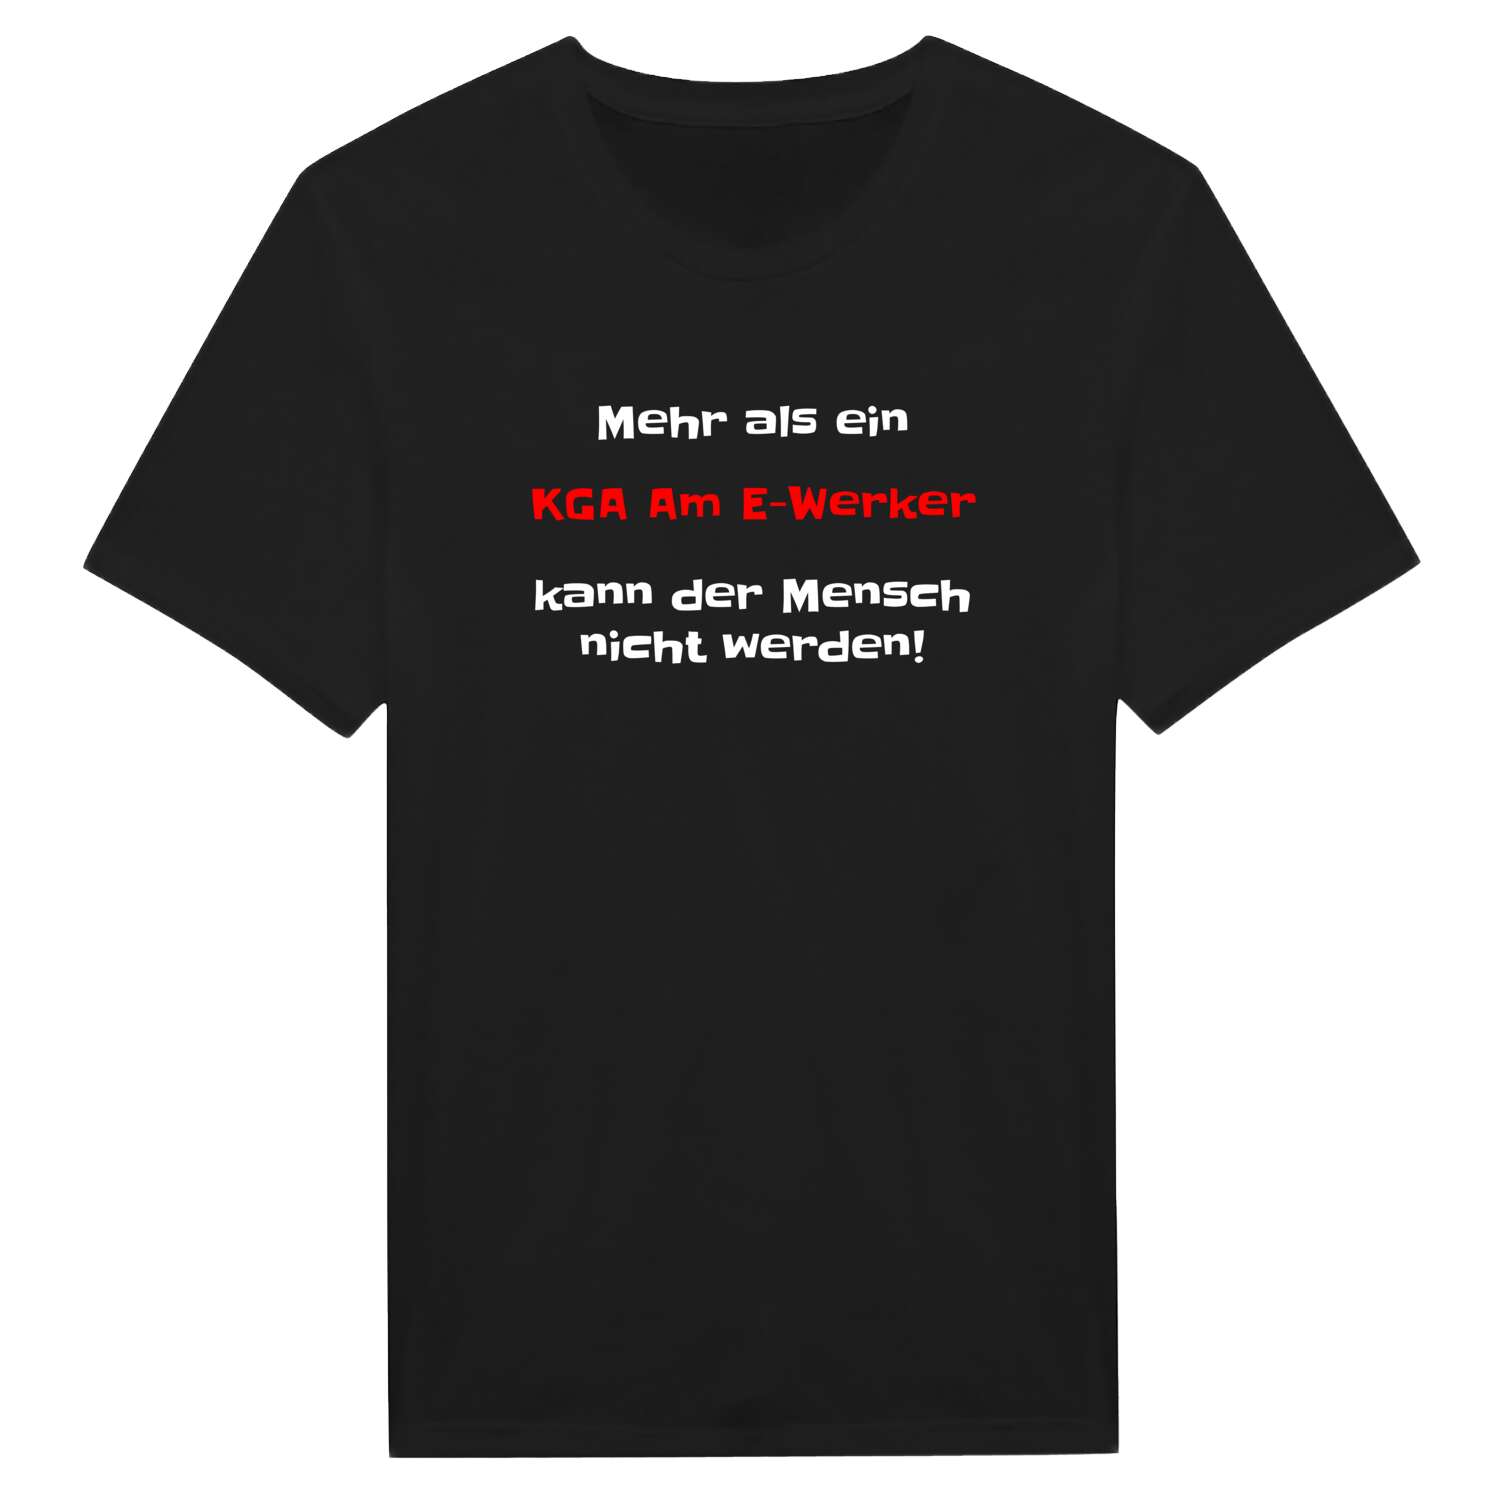 KGA Am E-Werk T-Shirt »Mehr als ein«